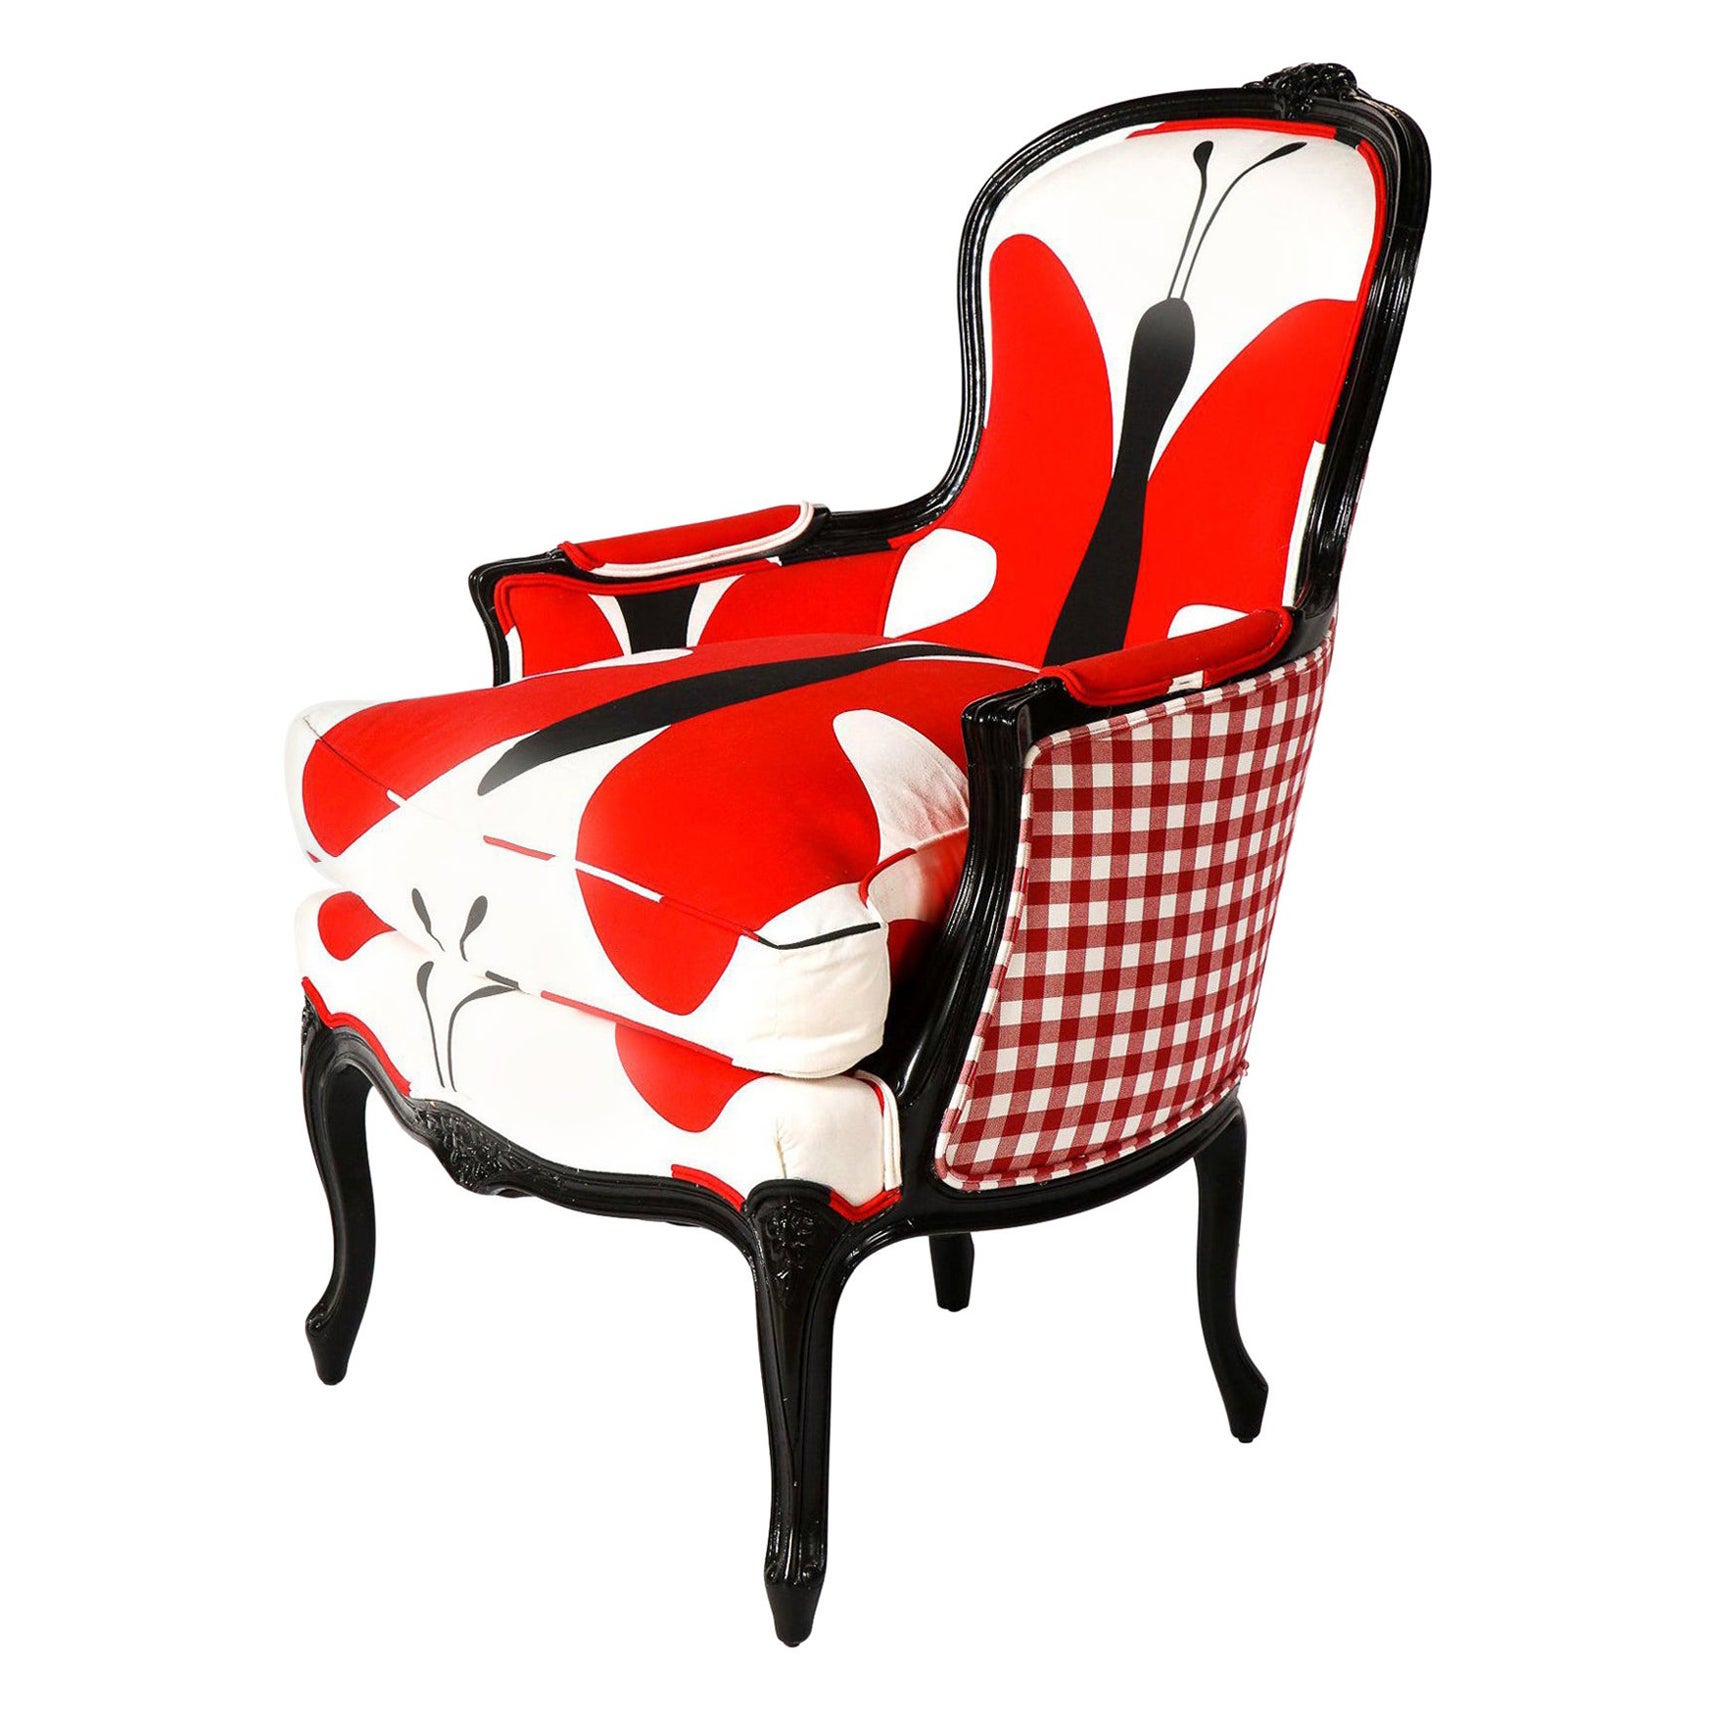 Chaise Bergère avec Wood Wood laqué noir, tissus imprimés rouge/blanc et noir